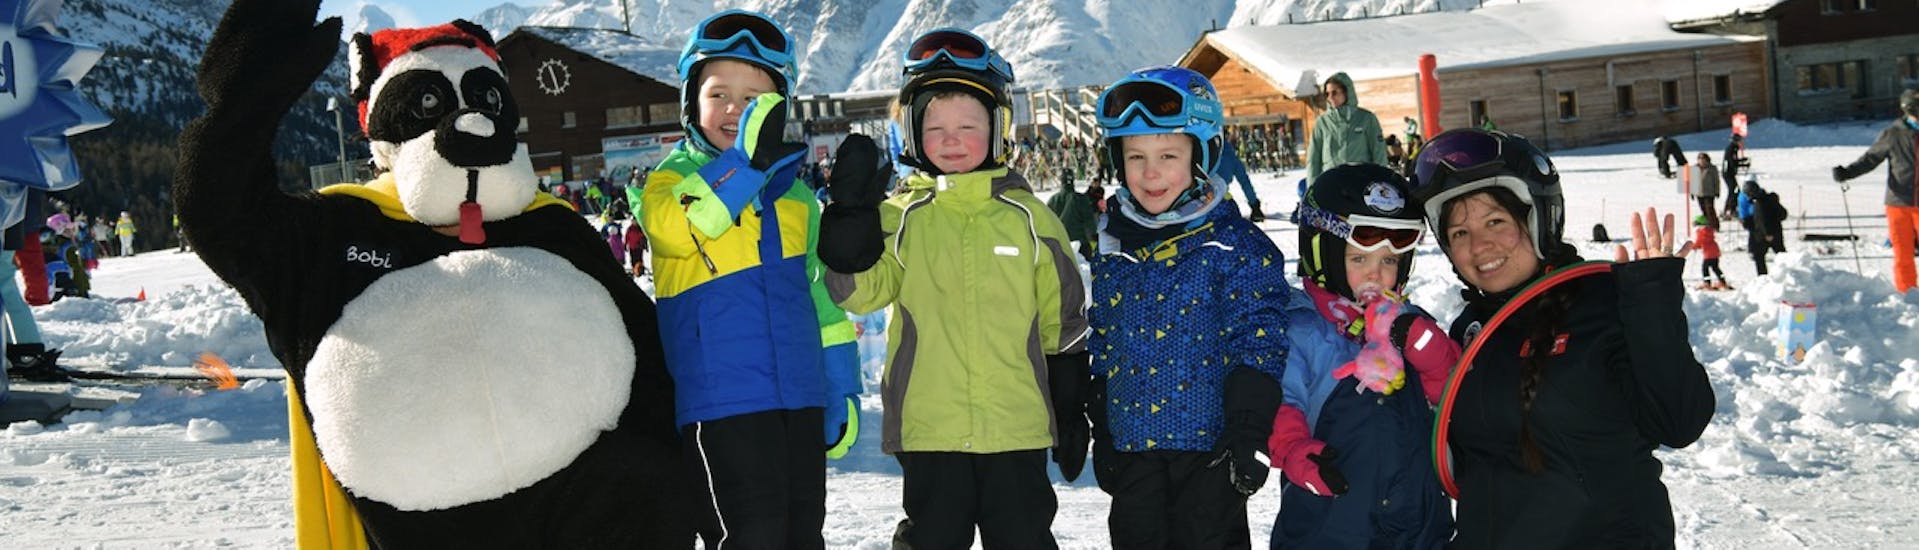 Een groep skiërs gaat op de foto met de mascotte Bobi na een succesvolle cursus bij Bobi's Snowkindergarden (2,5-4 jaar) voor beginners bij de skischool Grächen - Zenklusen Sport.